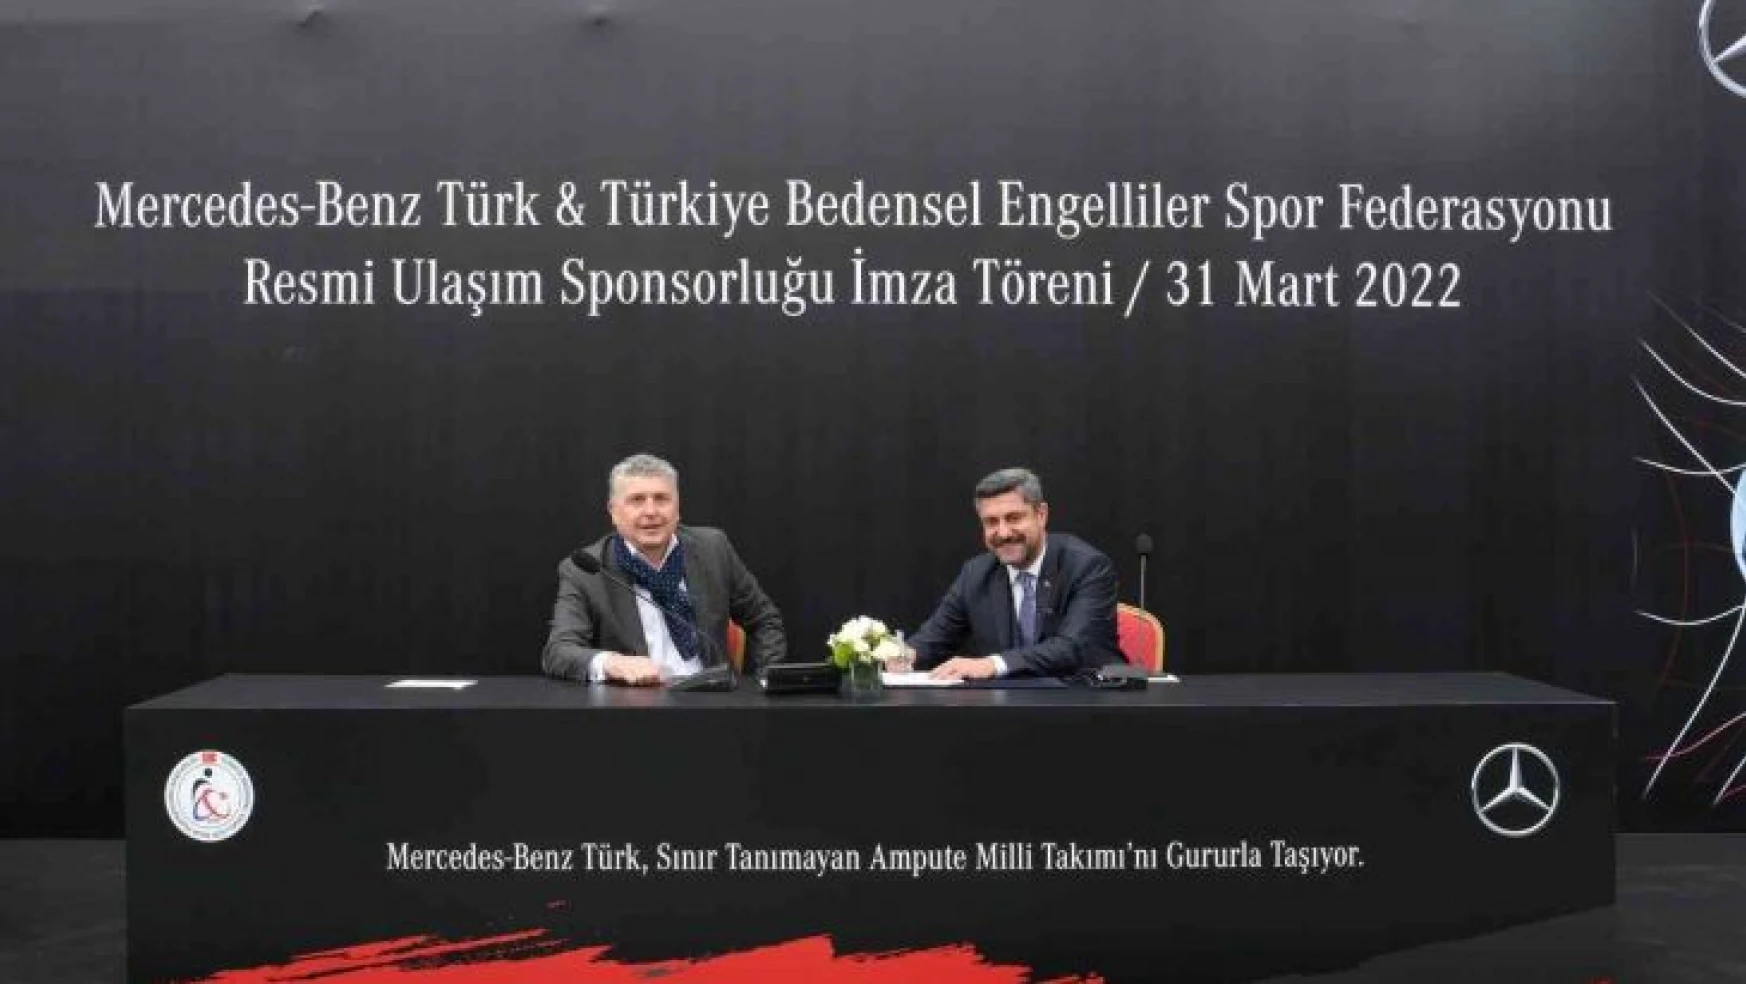 Mercedes-Benz Türk, Ampute Futbol Milli Takımı'nın resmi ulaşım sponsoru oldu